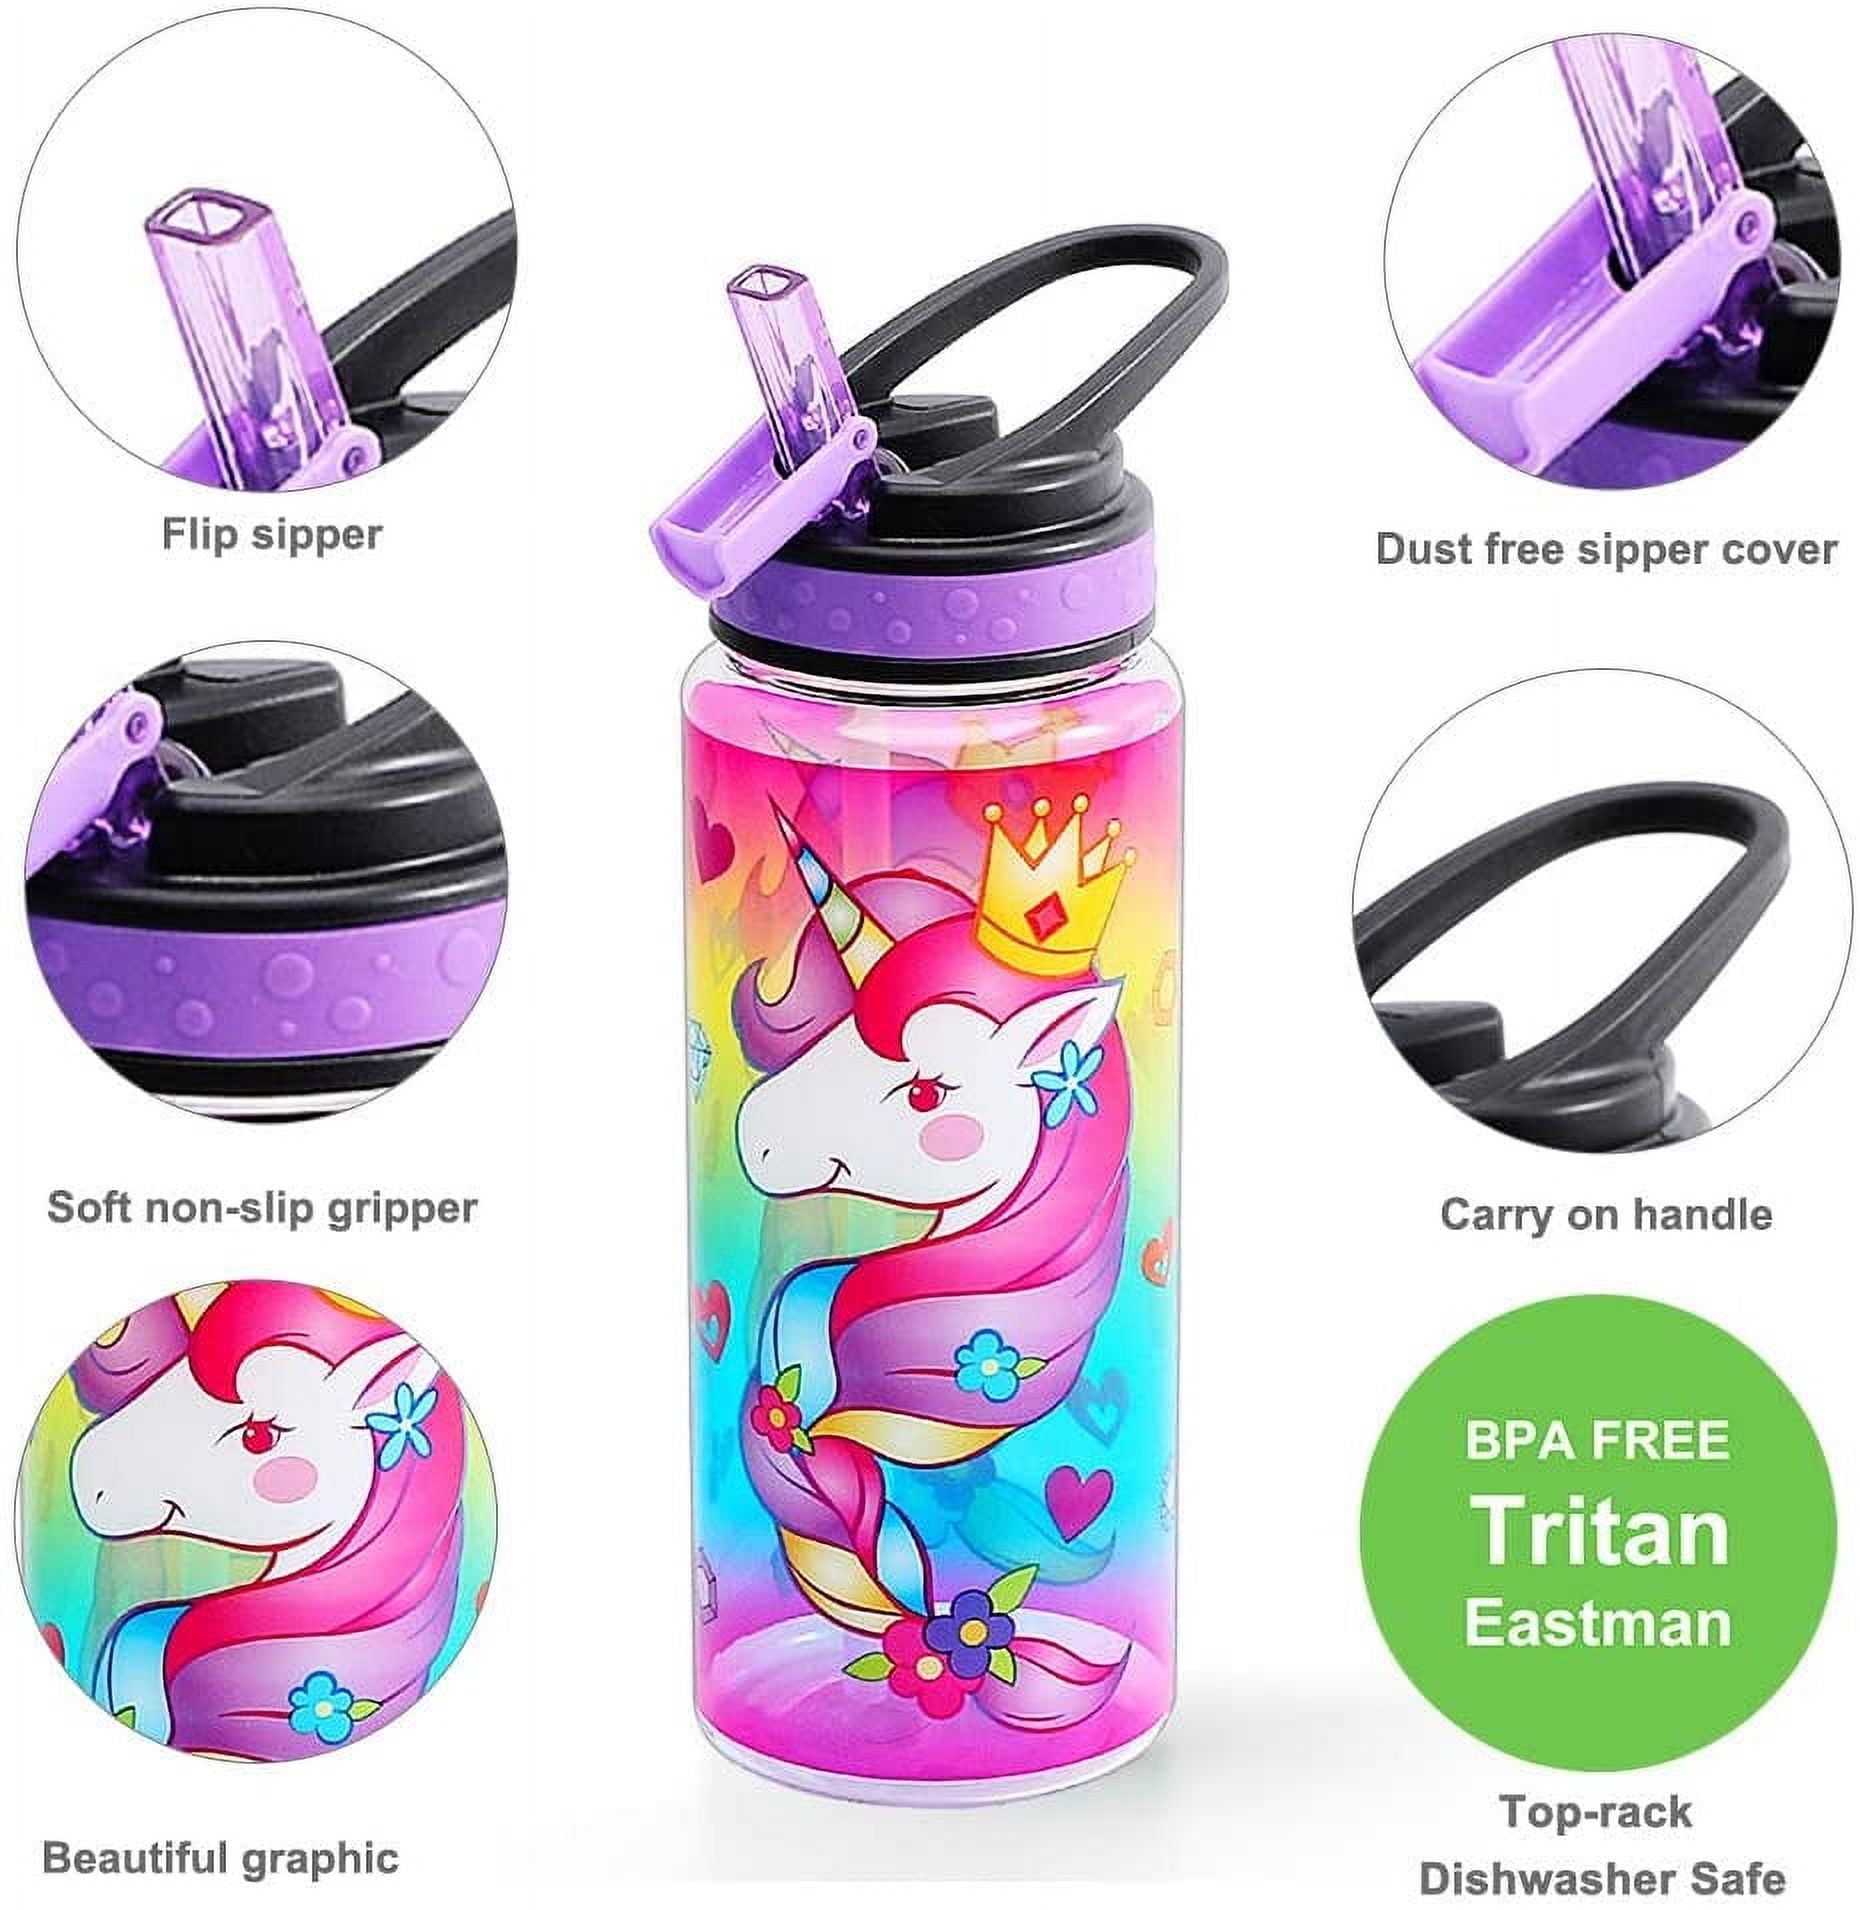 Glitter Water Bottle for Women Teen Girls, BPA Free Tritan & Leak Proof One Click Open Flip Top & Easy Clean & Soft Carry Handle, 30oz / 900ml